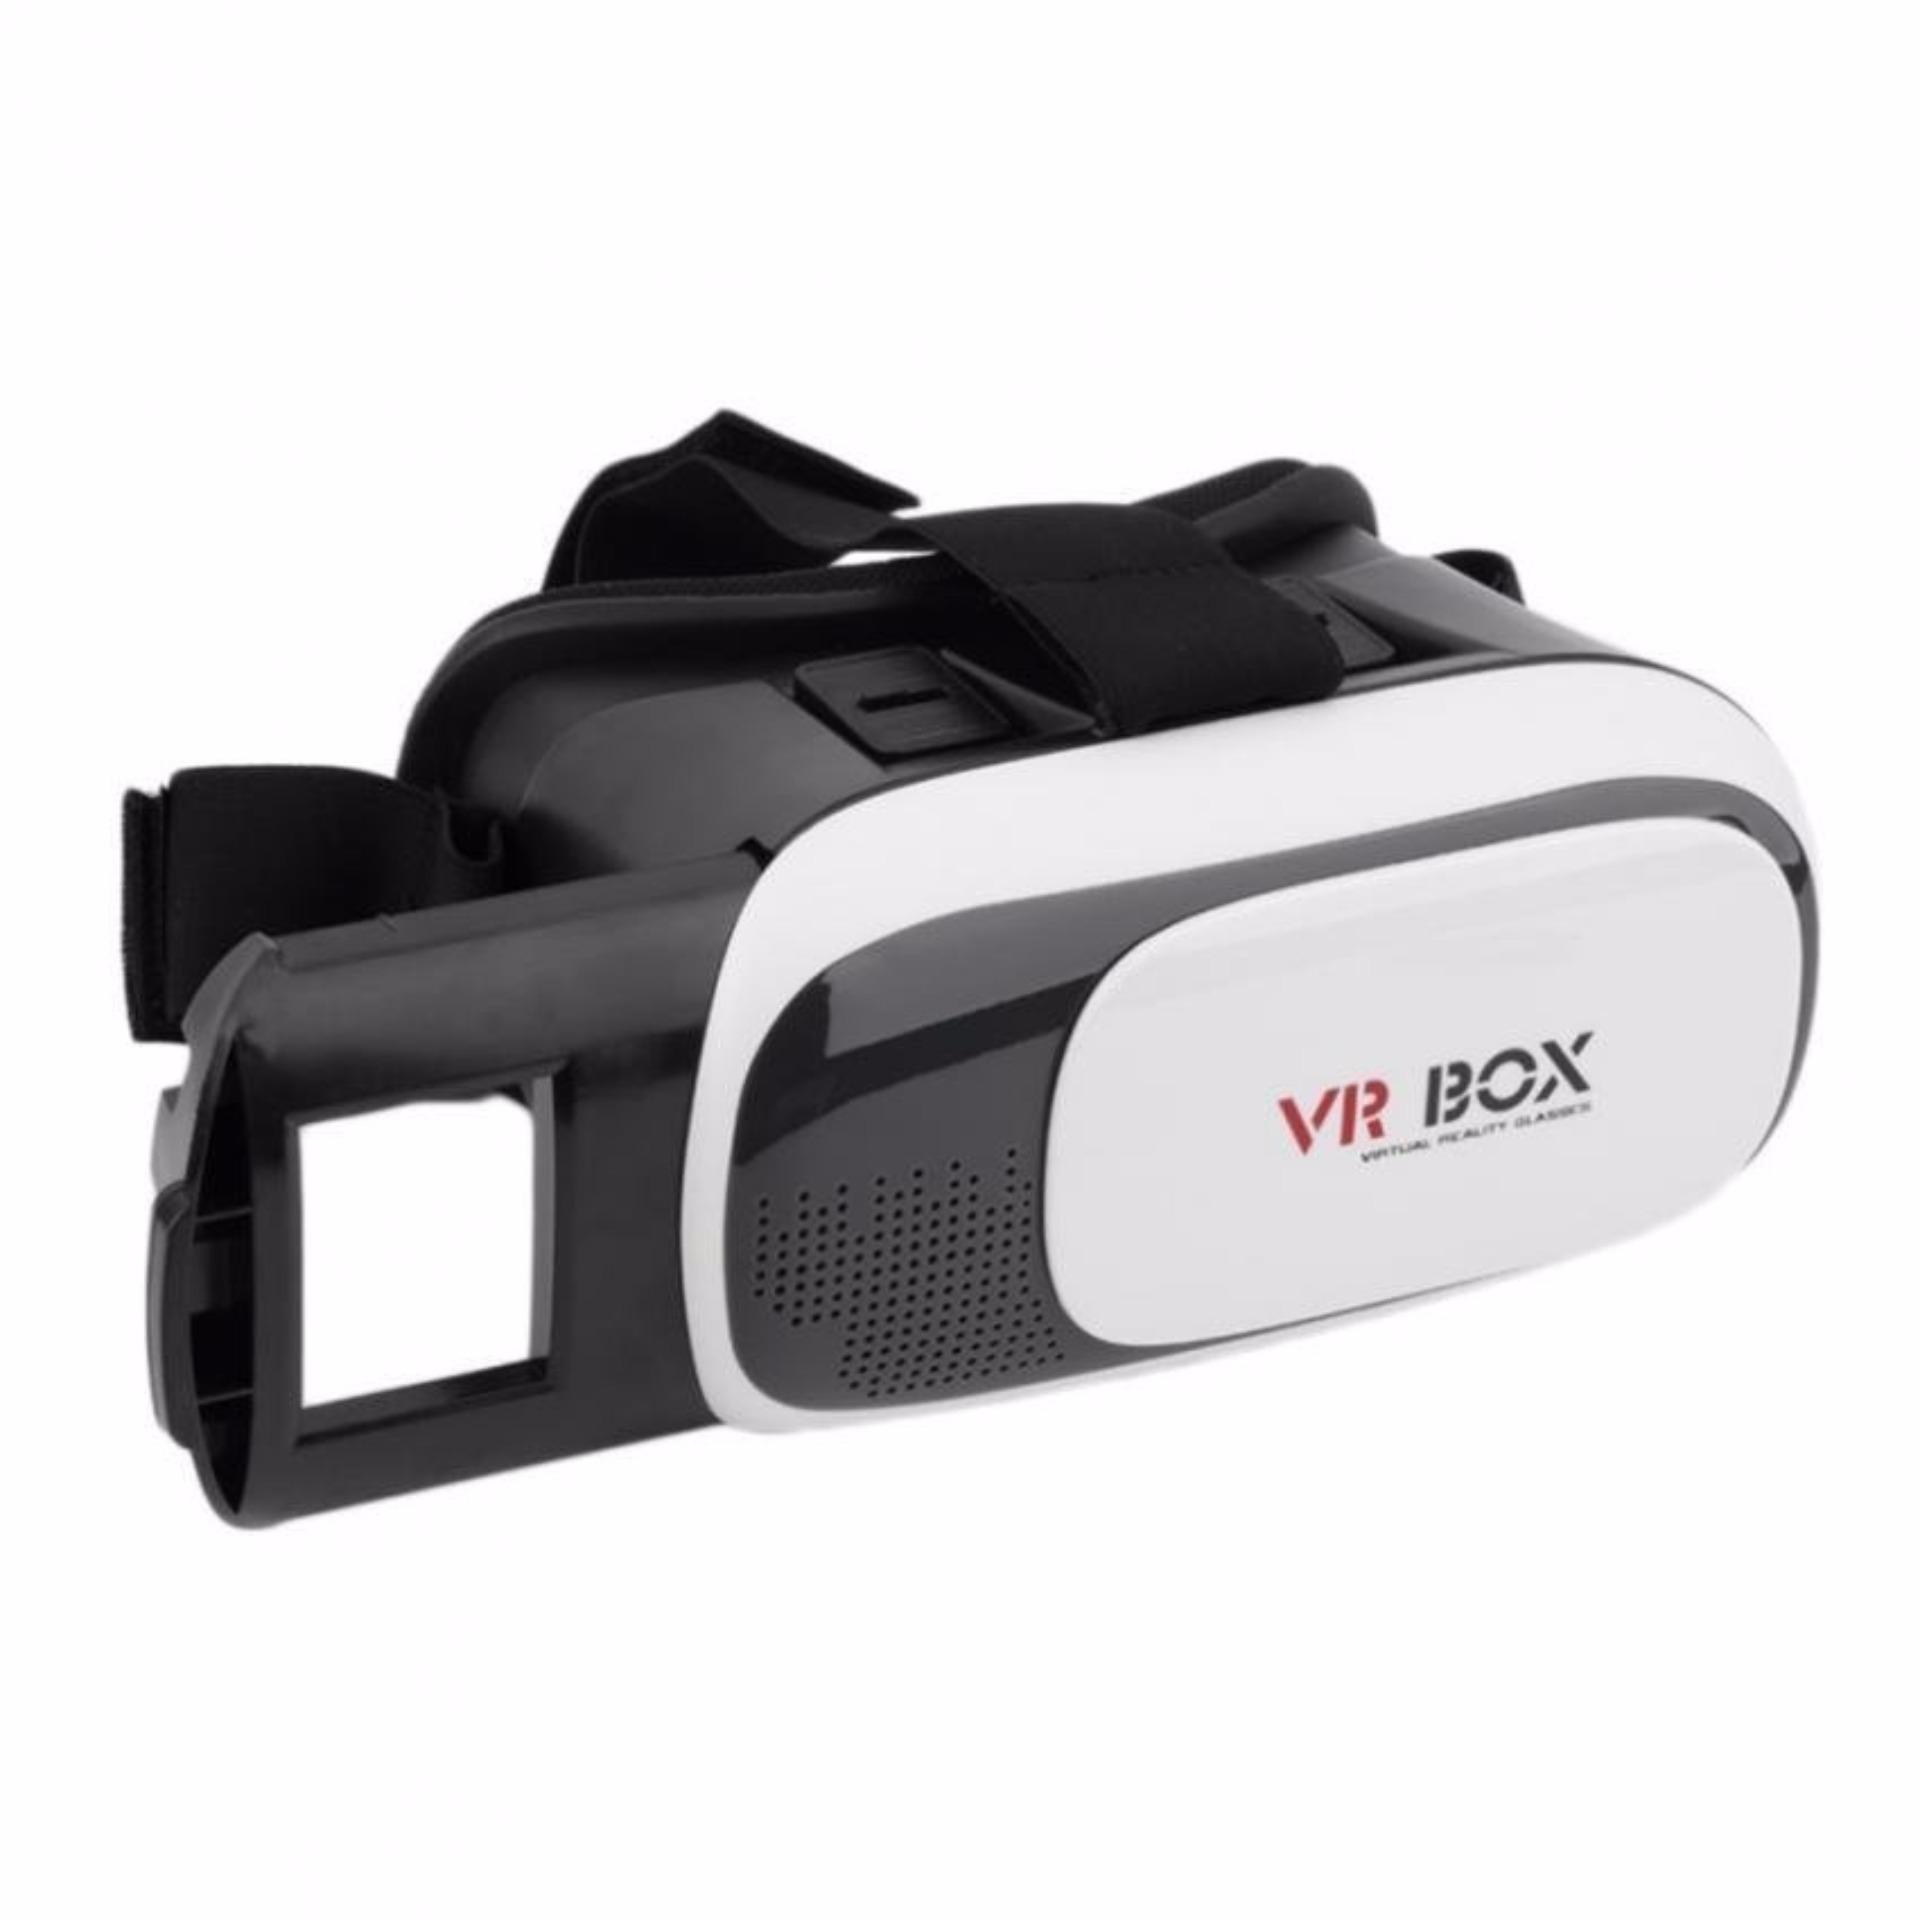 Kính thực tế ảo VR Box thế hệ thứ 2 (Đen phối trắng) tặng 1 máy nghe nhạc mp3 protab